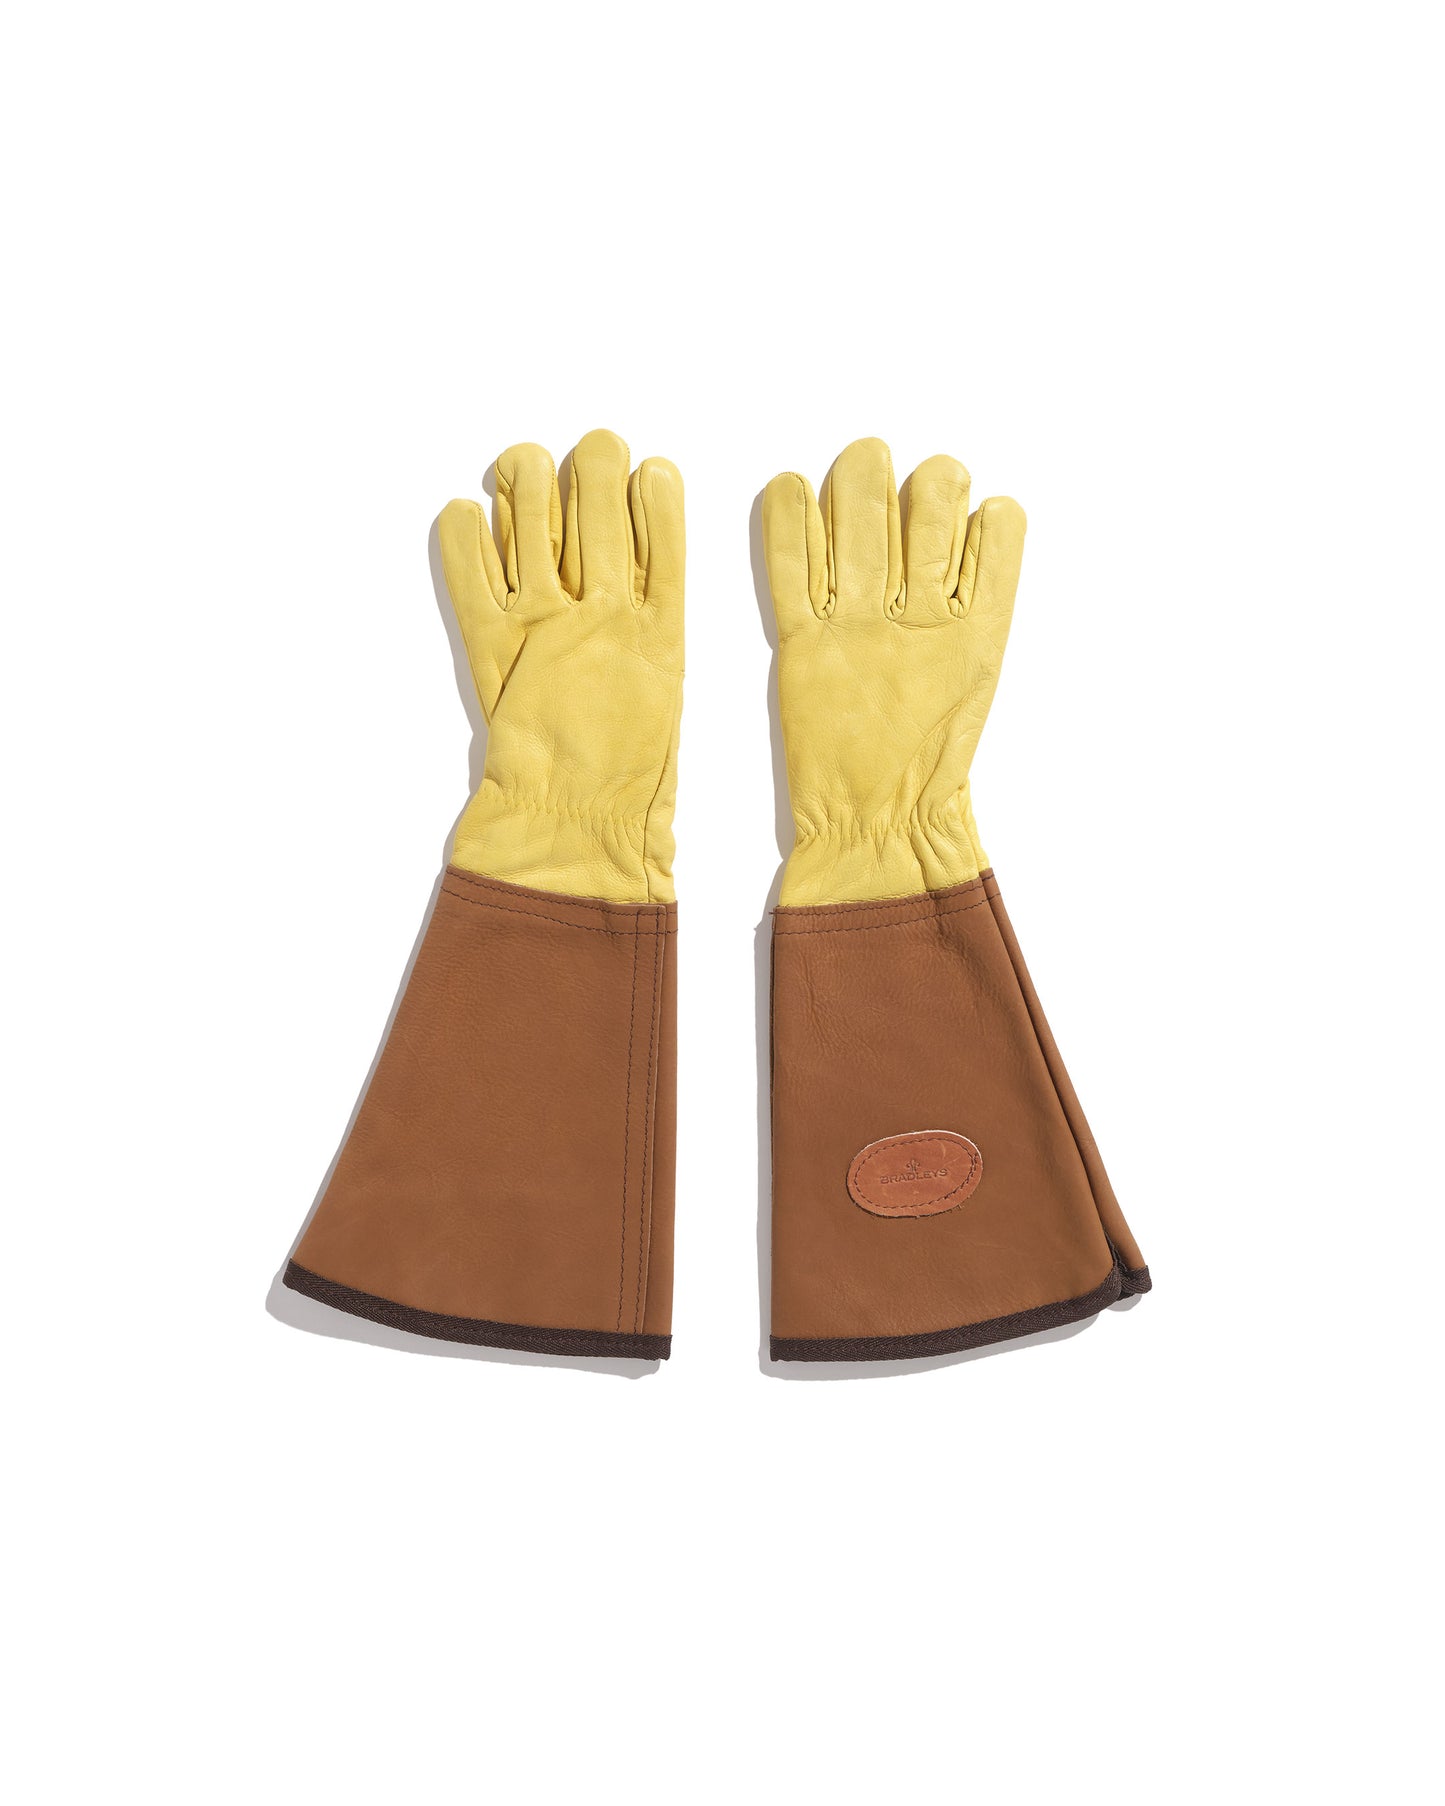 Longs gants de jardinage en cuir épais